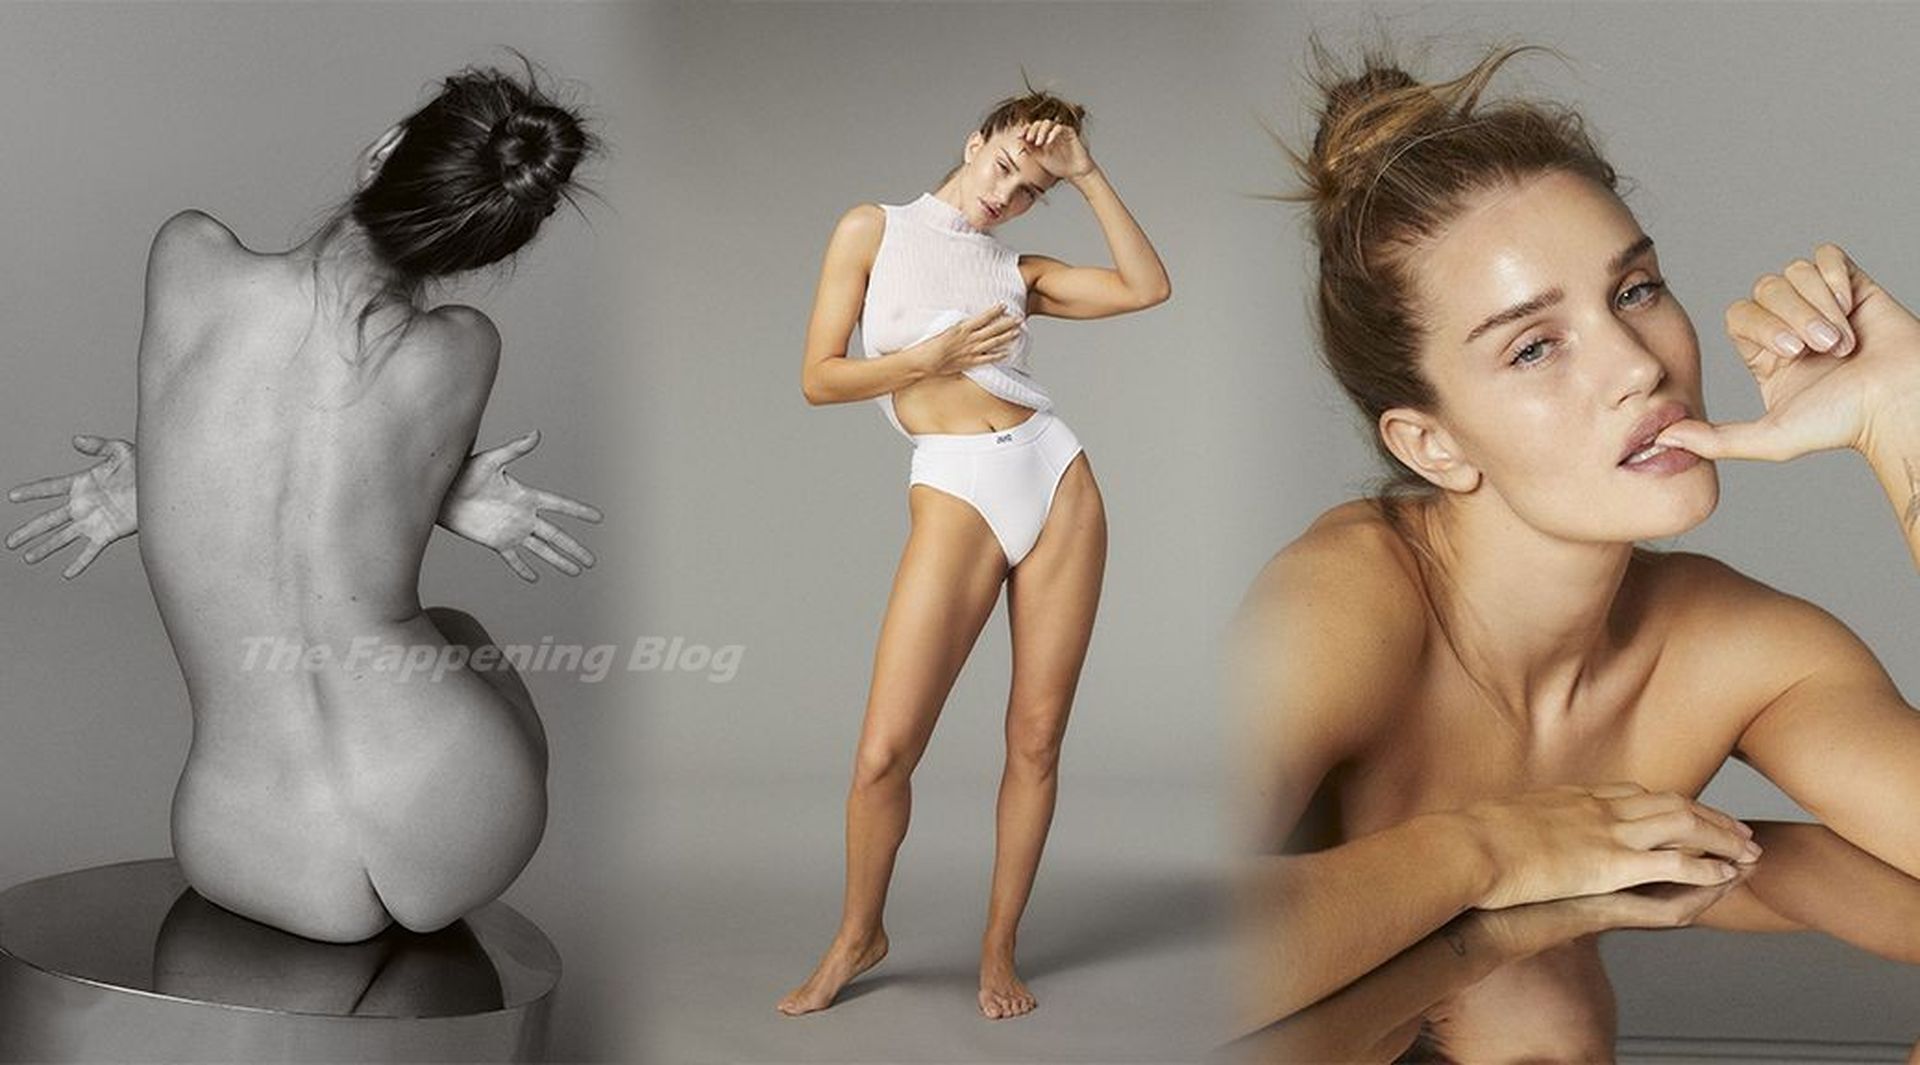 Rosie Huntington-Whiteley nudes | Watch-porn.net